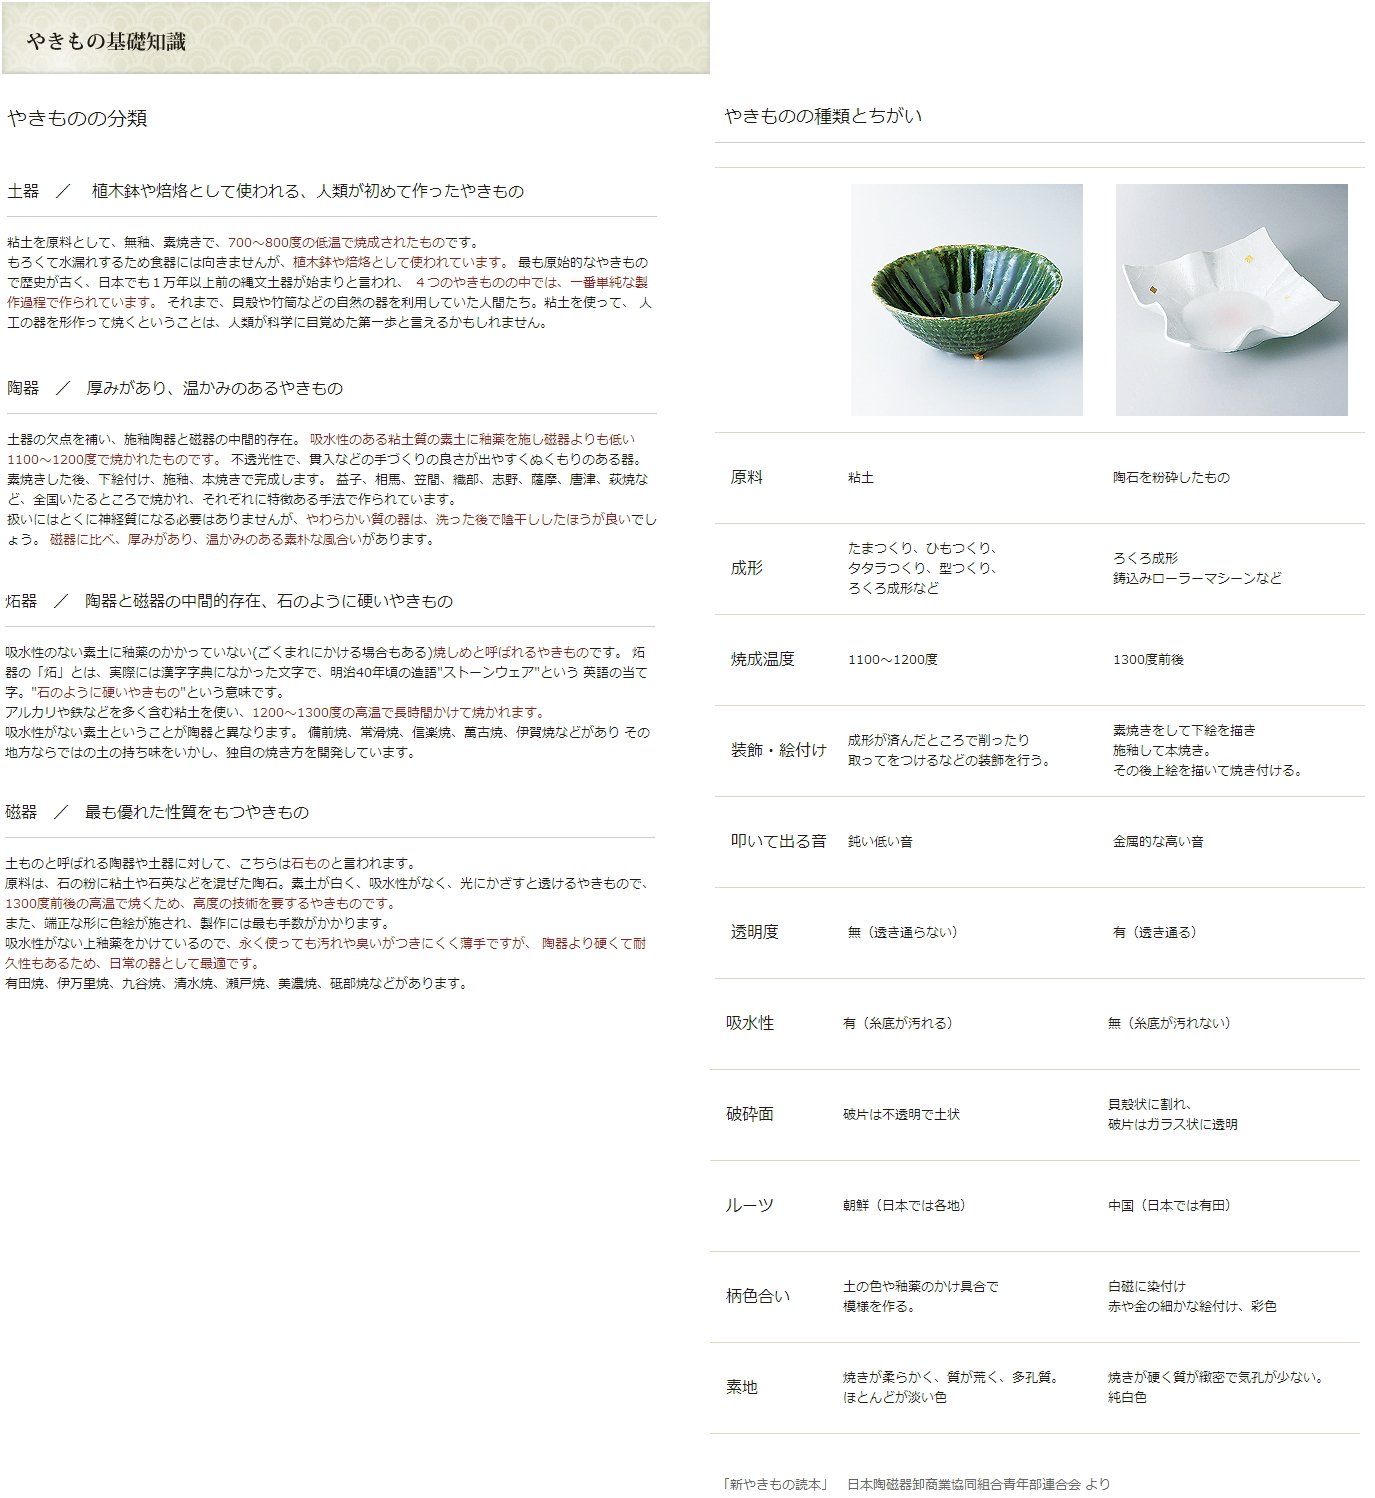 せともの本舗 Aluminum Product, Tagine Pot, Extra Large (Kyoto American Glaze), Fluorine φ12.6 inches (32 cm), 12.6 x 8.3 inches (32 x 21 cm), 10.6 fl oz (3,000